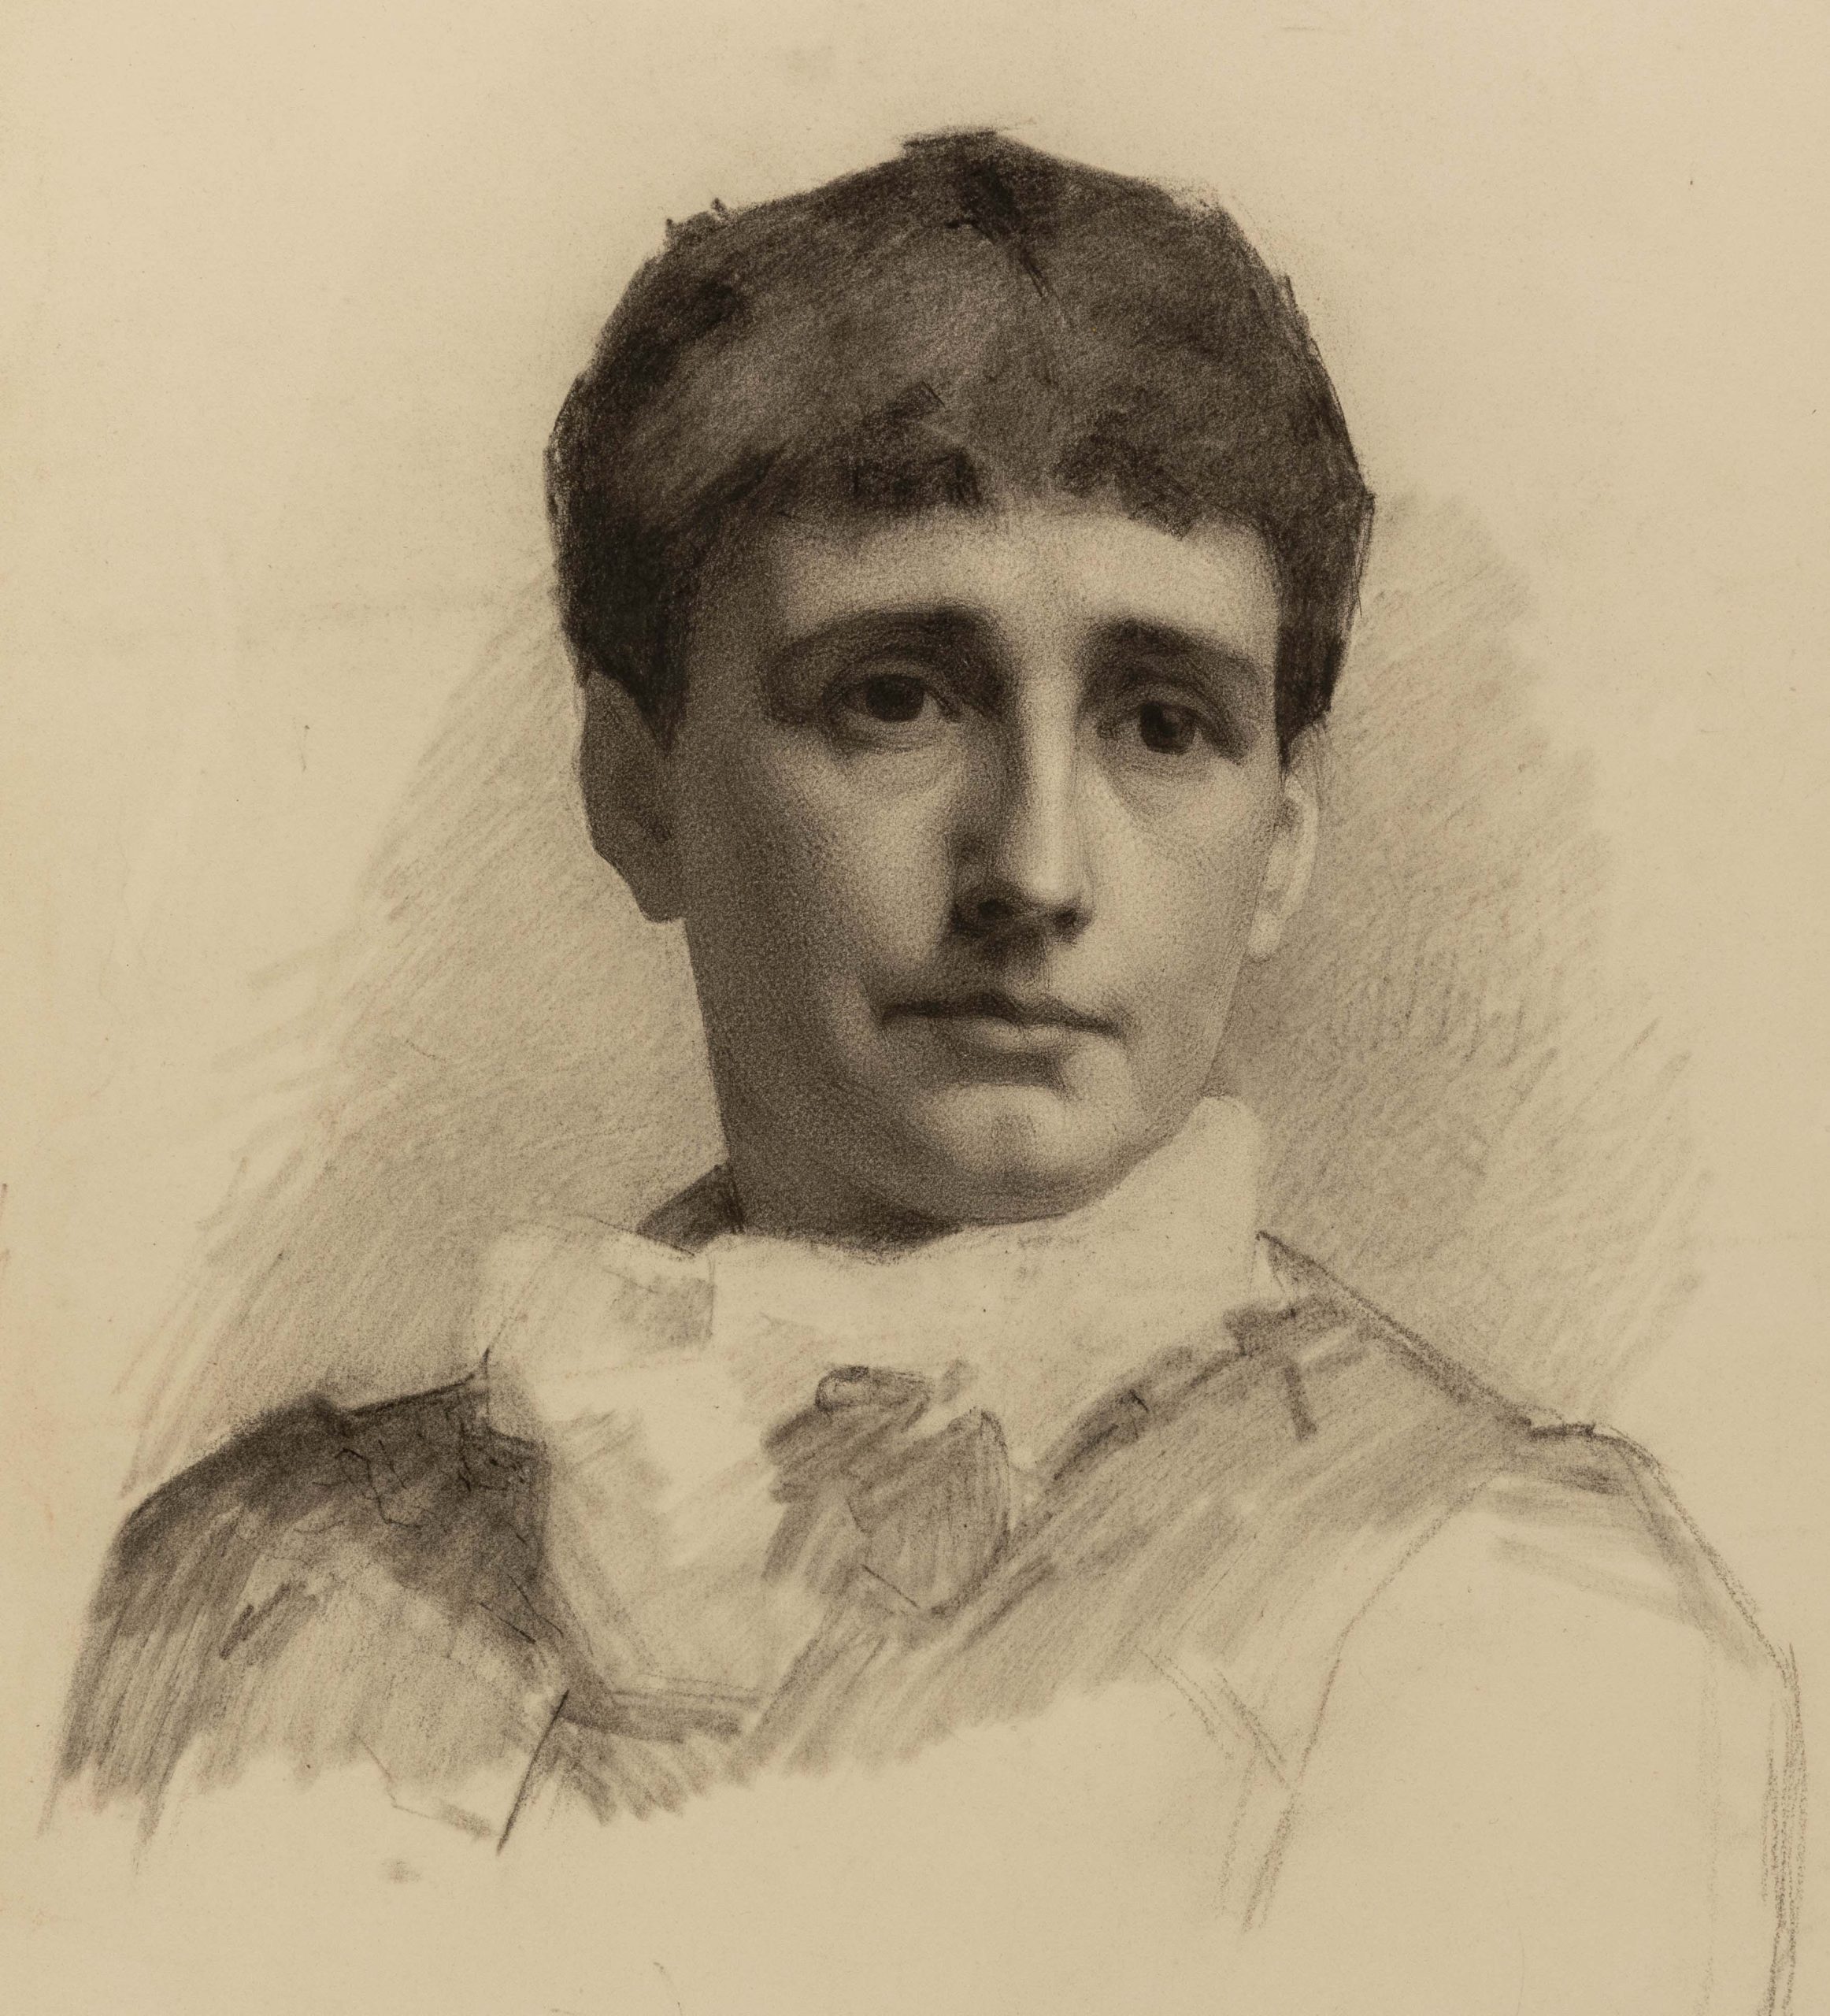 Bust-length portrait of a woman